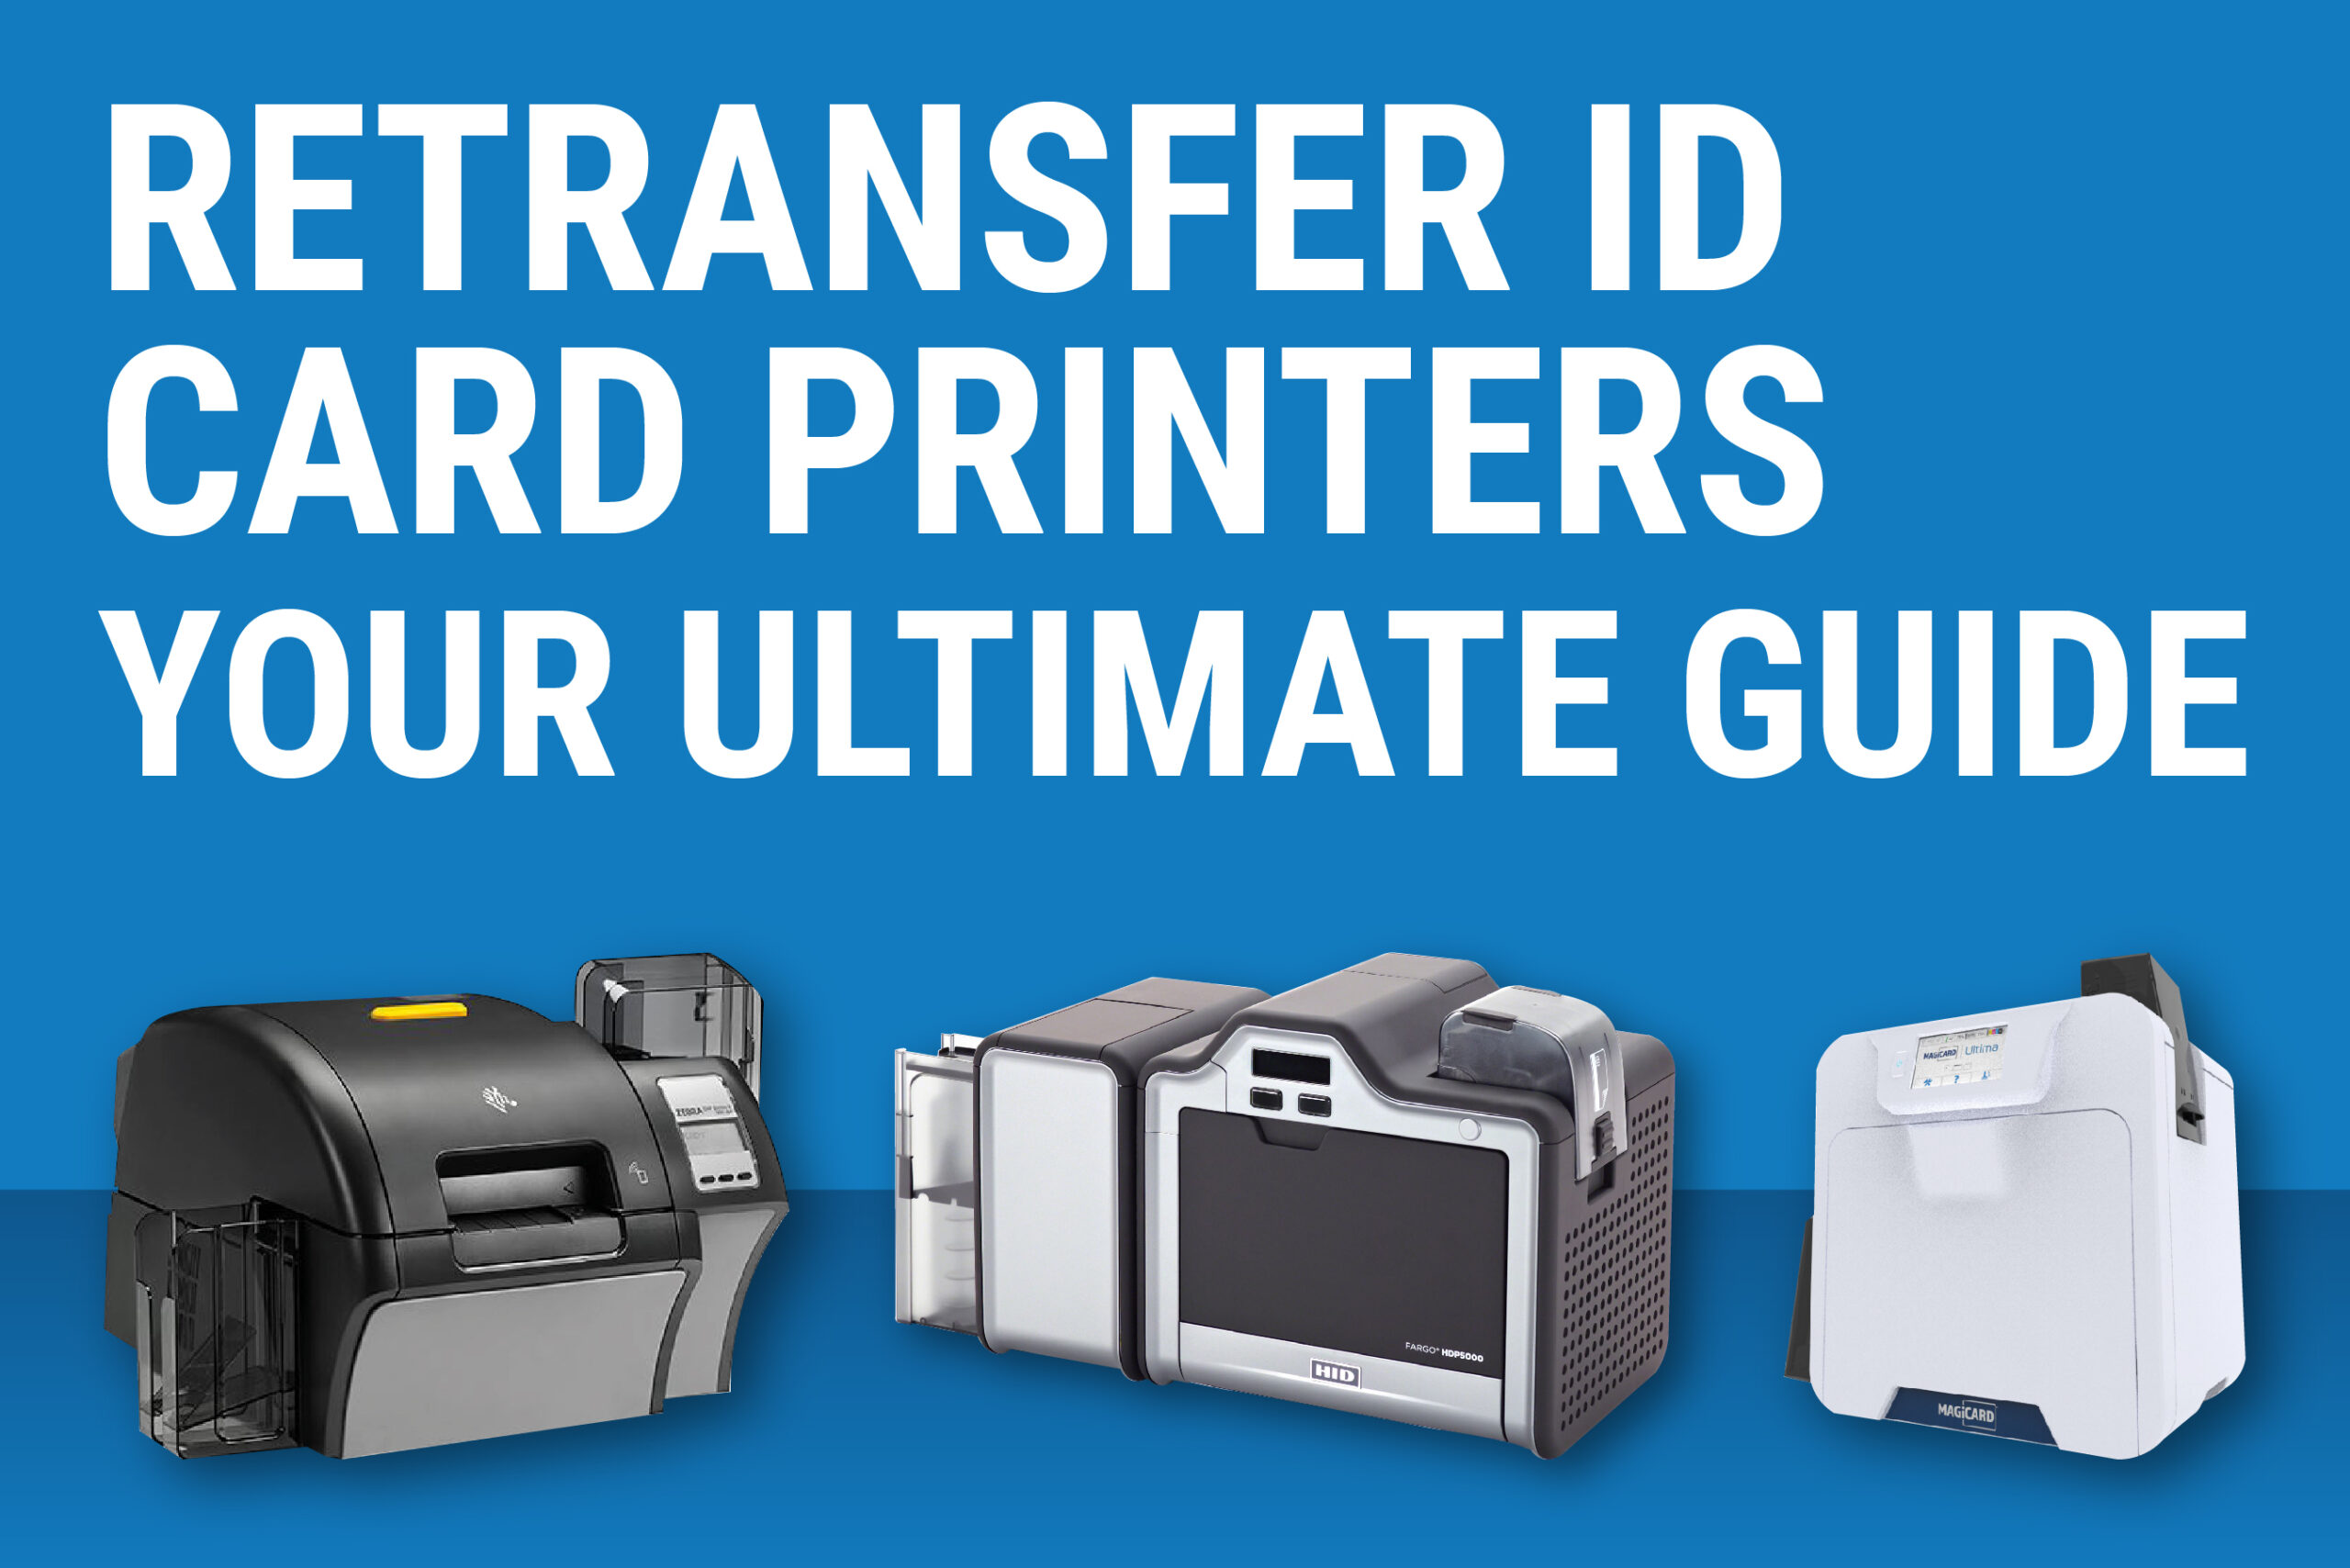 Retransfer Printers | Your Ultimate Guide | Digital ID